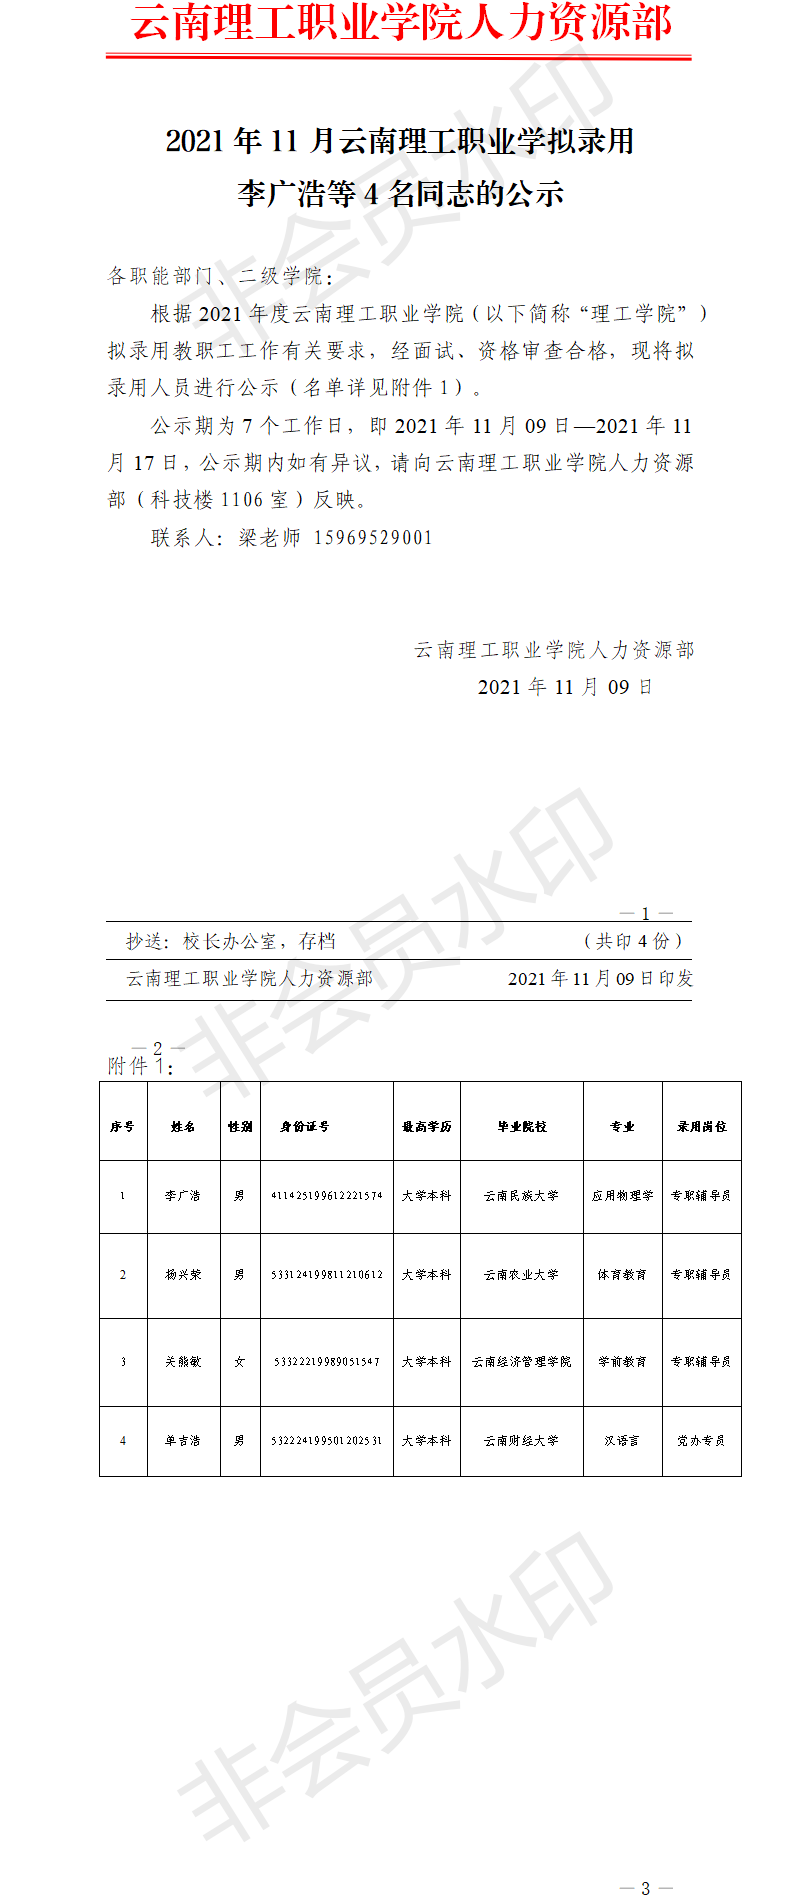 1.1108云南理工职业学院关于李广浩等5名同志的录用公示(1).png